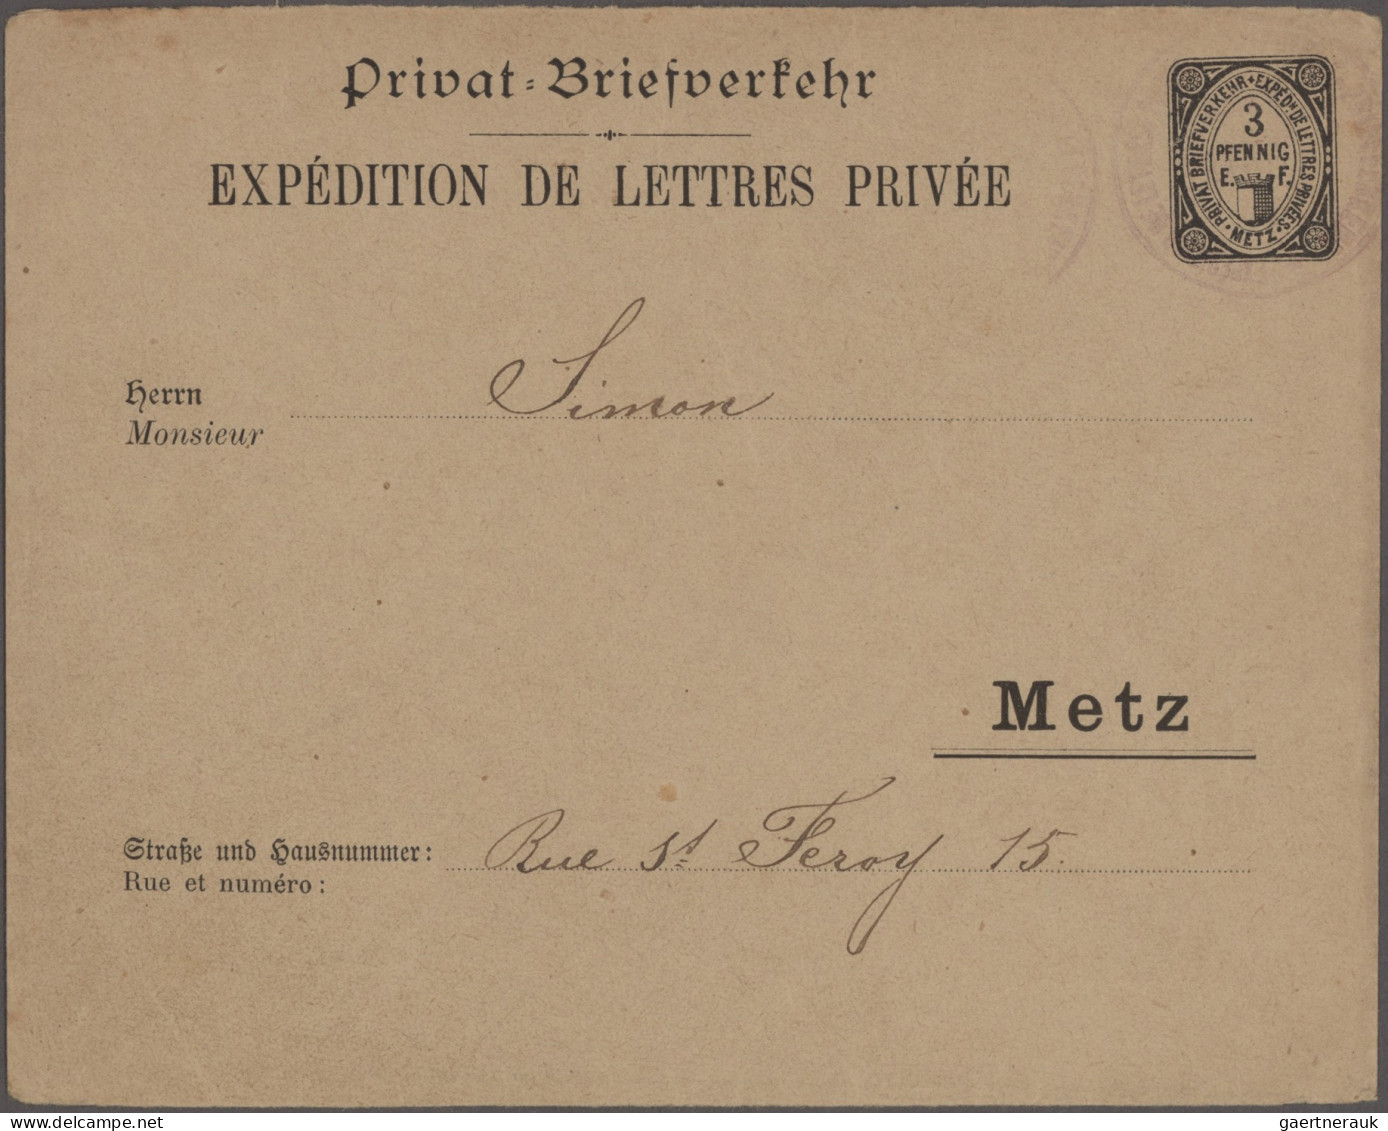 Deutsches Reich - Privatpost (Stadtpost): 1886/1896, METZ/ Privat-Brief-Verkehr - Private & Local Mails